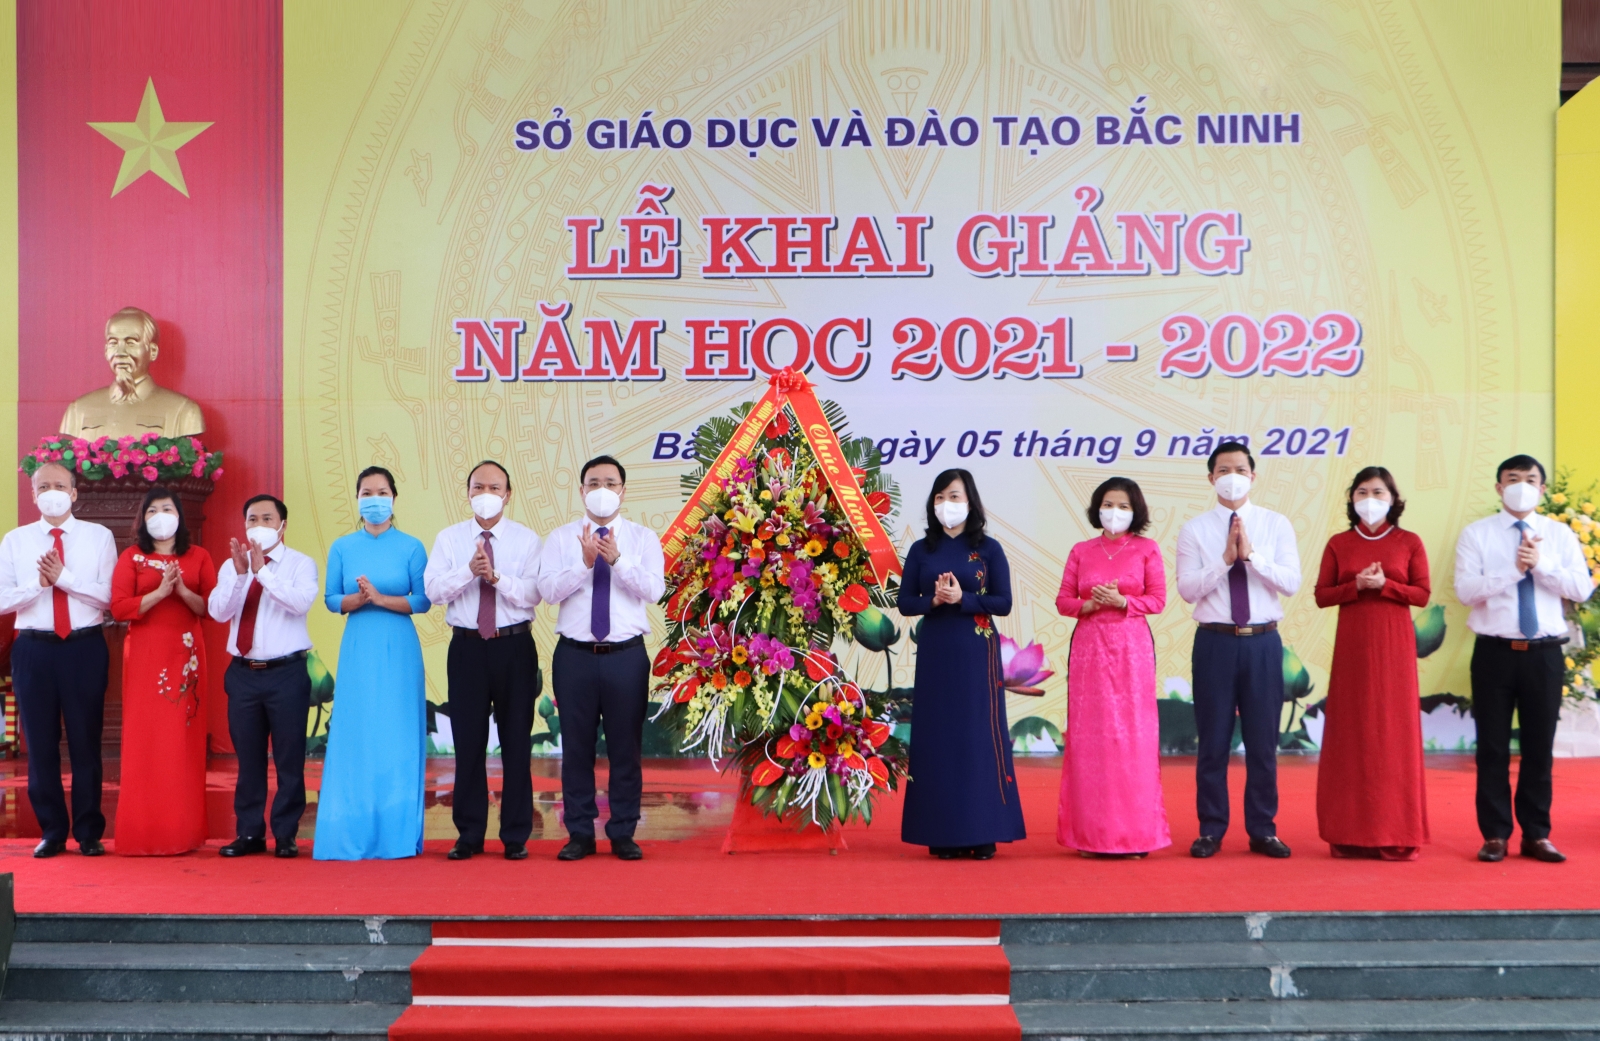 Lãnh đạo tỉnh Bắc Ninh chung vui cùng thầy trò trong  lễ khai giảng đặc biệt - Ảnh minh hoạ 3